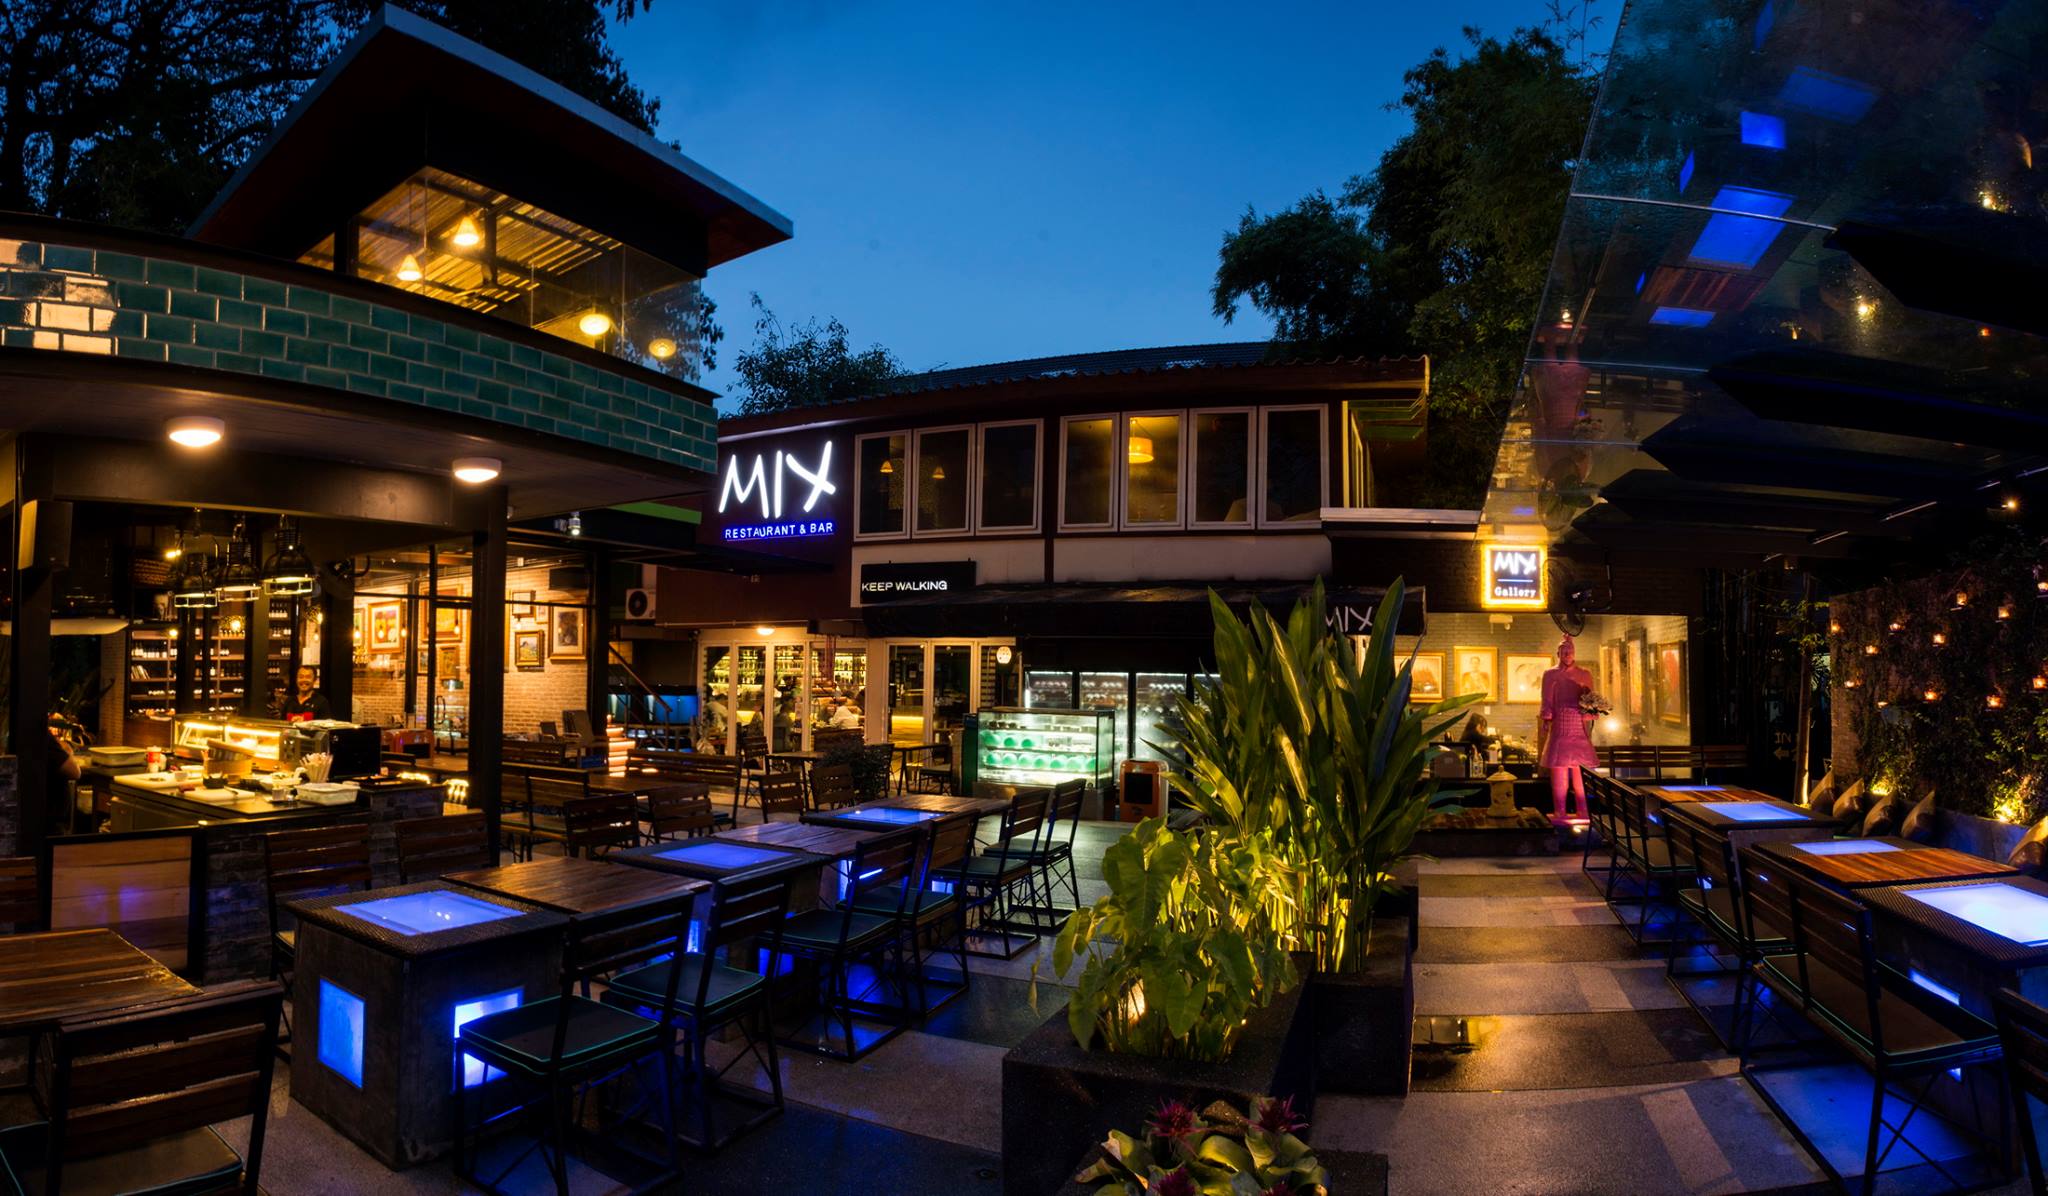 มิกซ์ เรสทัวรอง แอนด์ บาร์  (Mix Restaurant & Bar at Chiang Mai) : เชียงใหม่ (Chiang Mai)